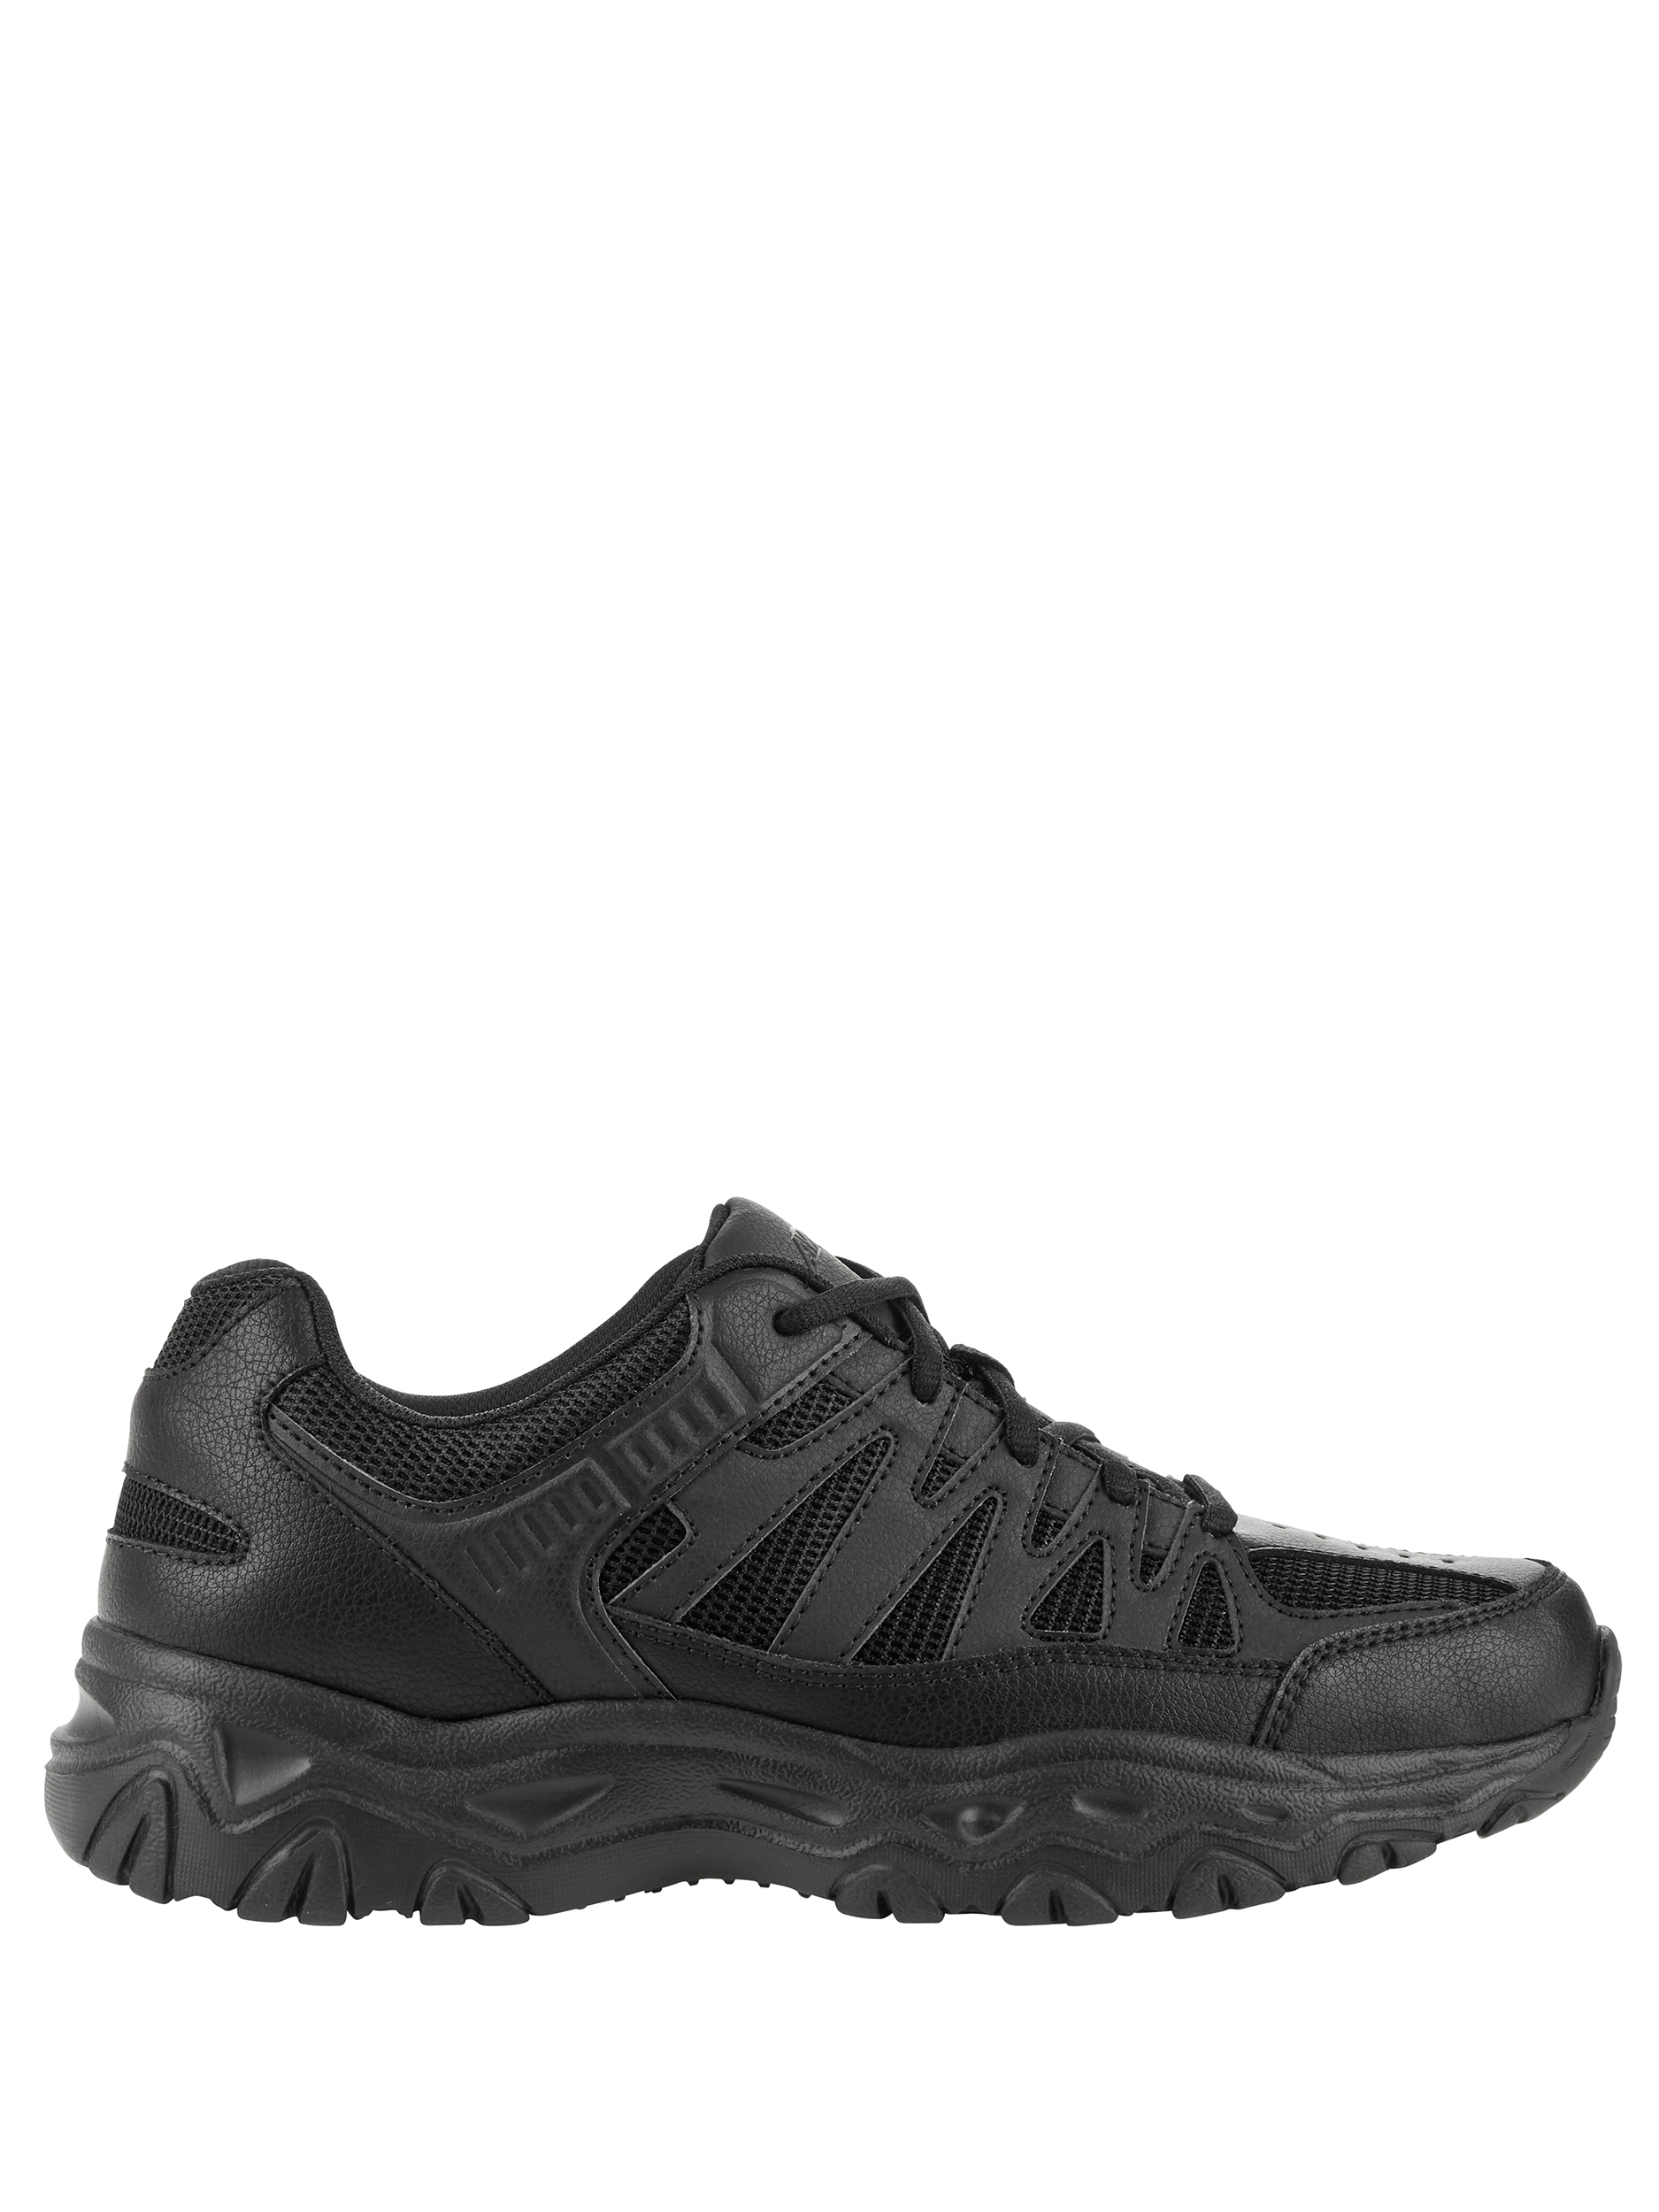 Avia Men's Walker Lace Wide Width Athletic Shoe - image 2 of 6